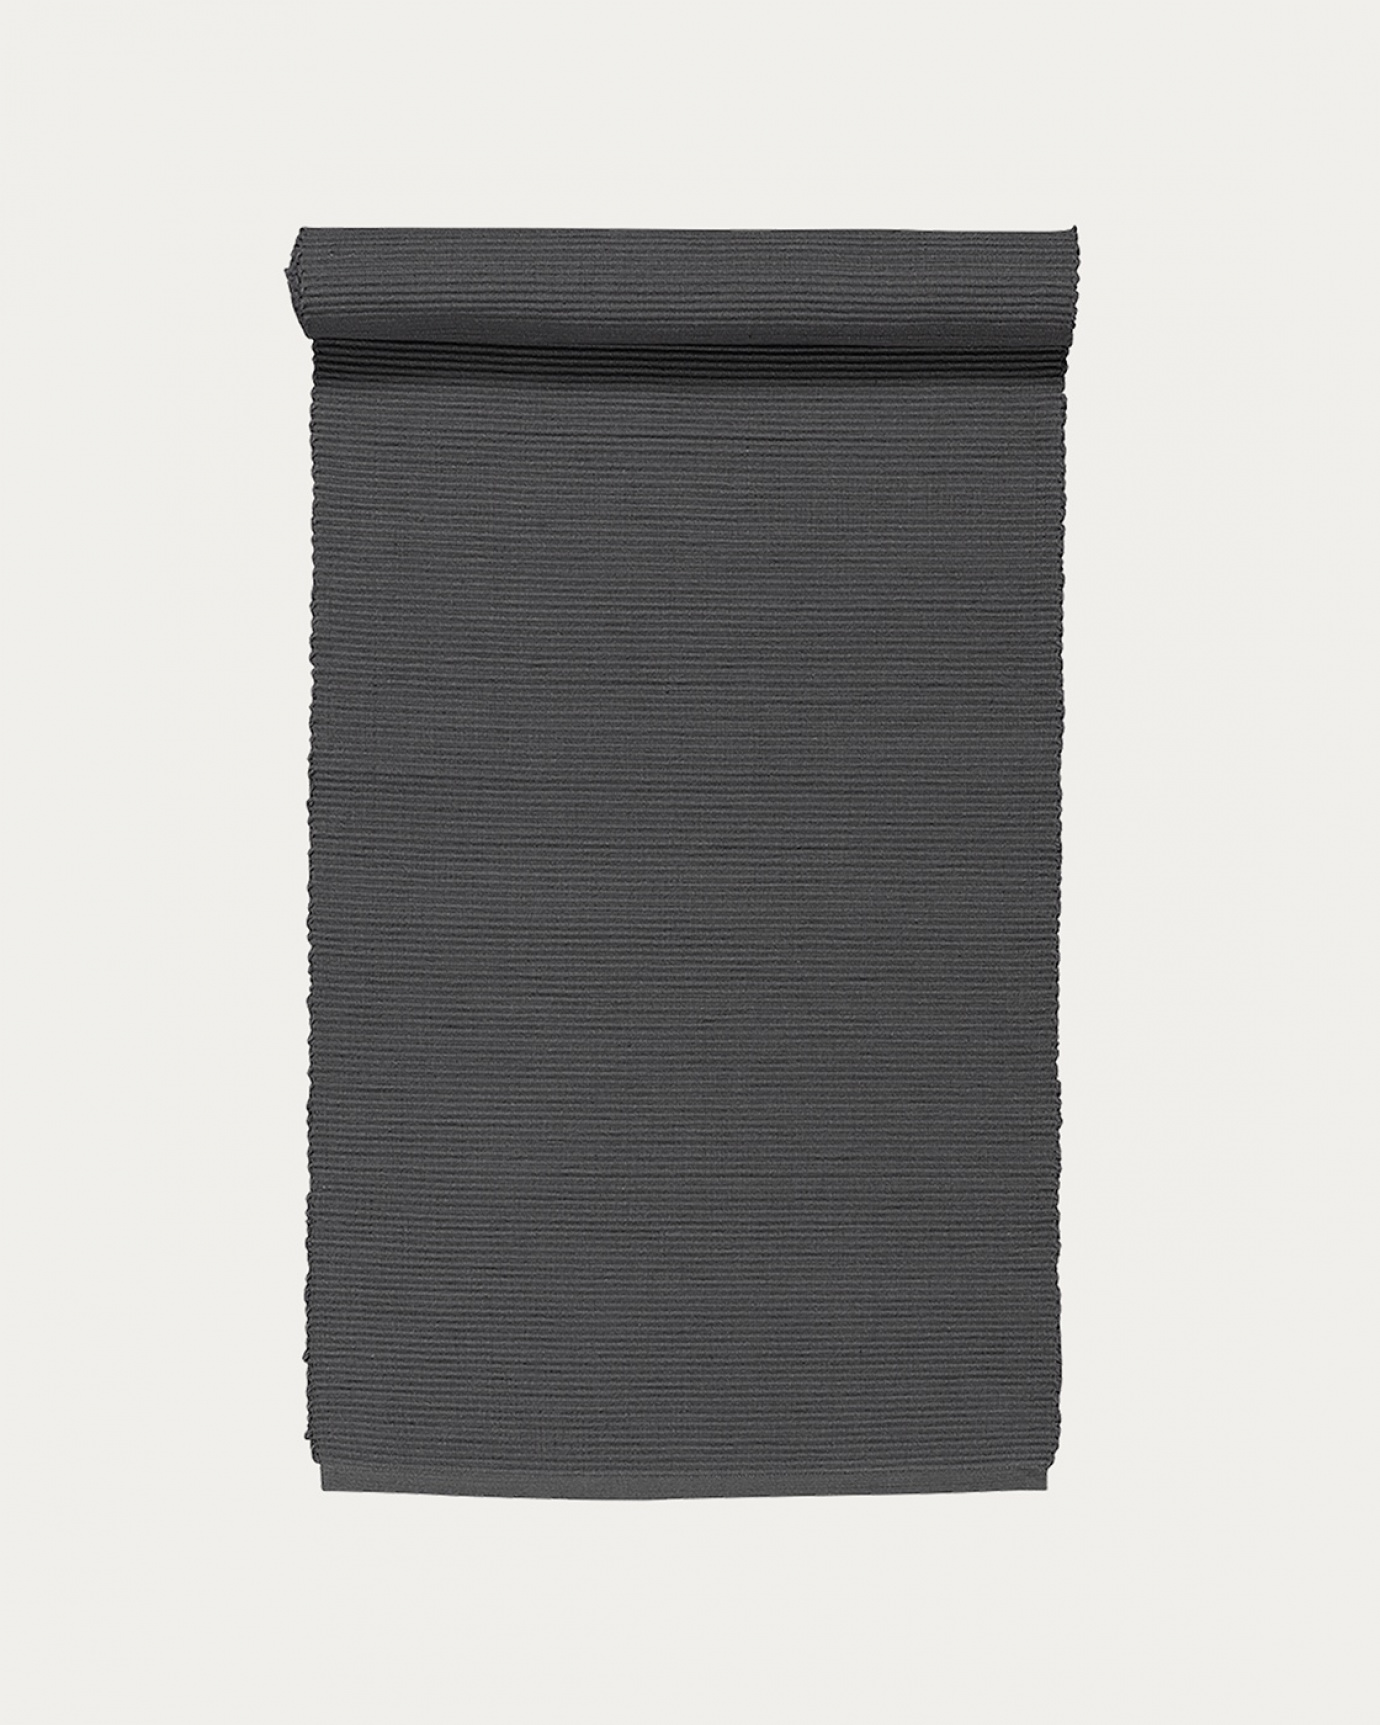 Produktbild granitgrå UNI löpare av mjuk bomull i ribbad kvalité från LINUM DESIGN. Storlek 45x150 cm.